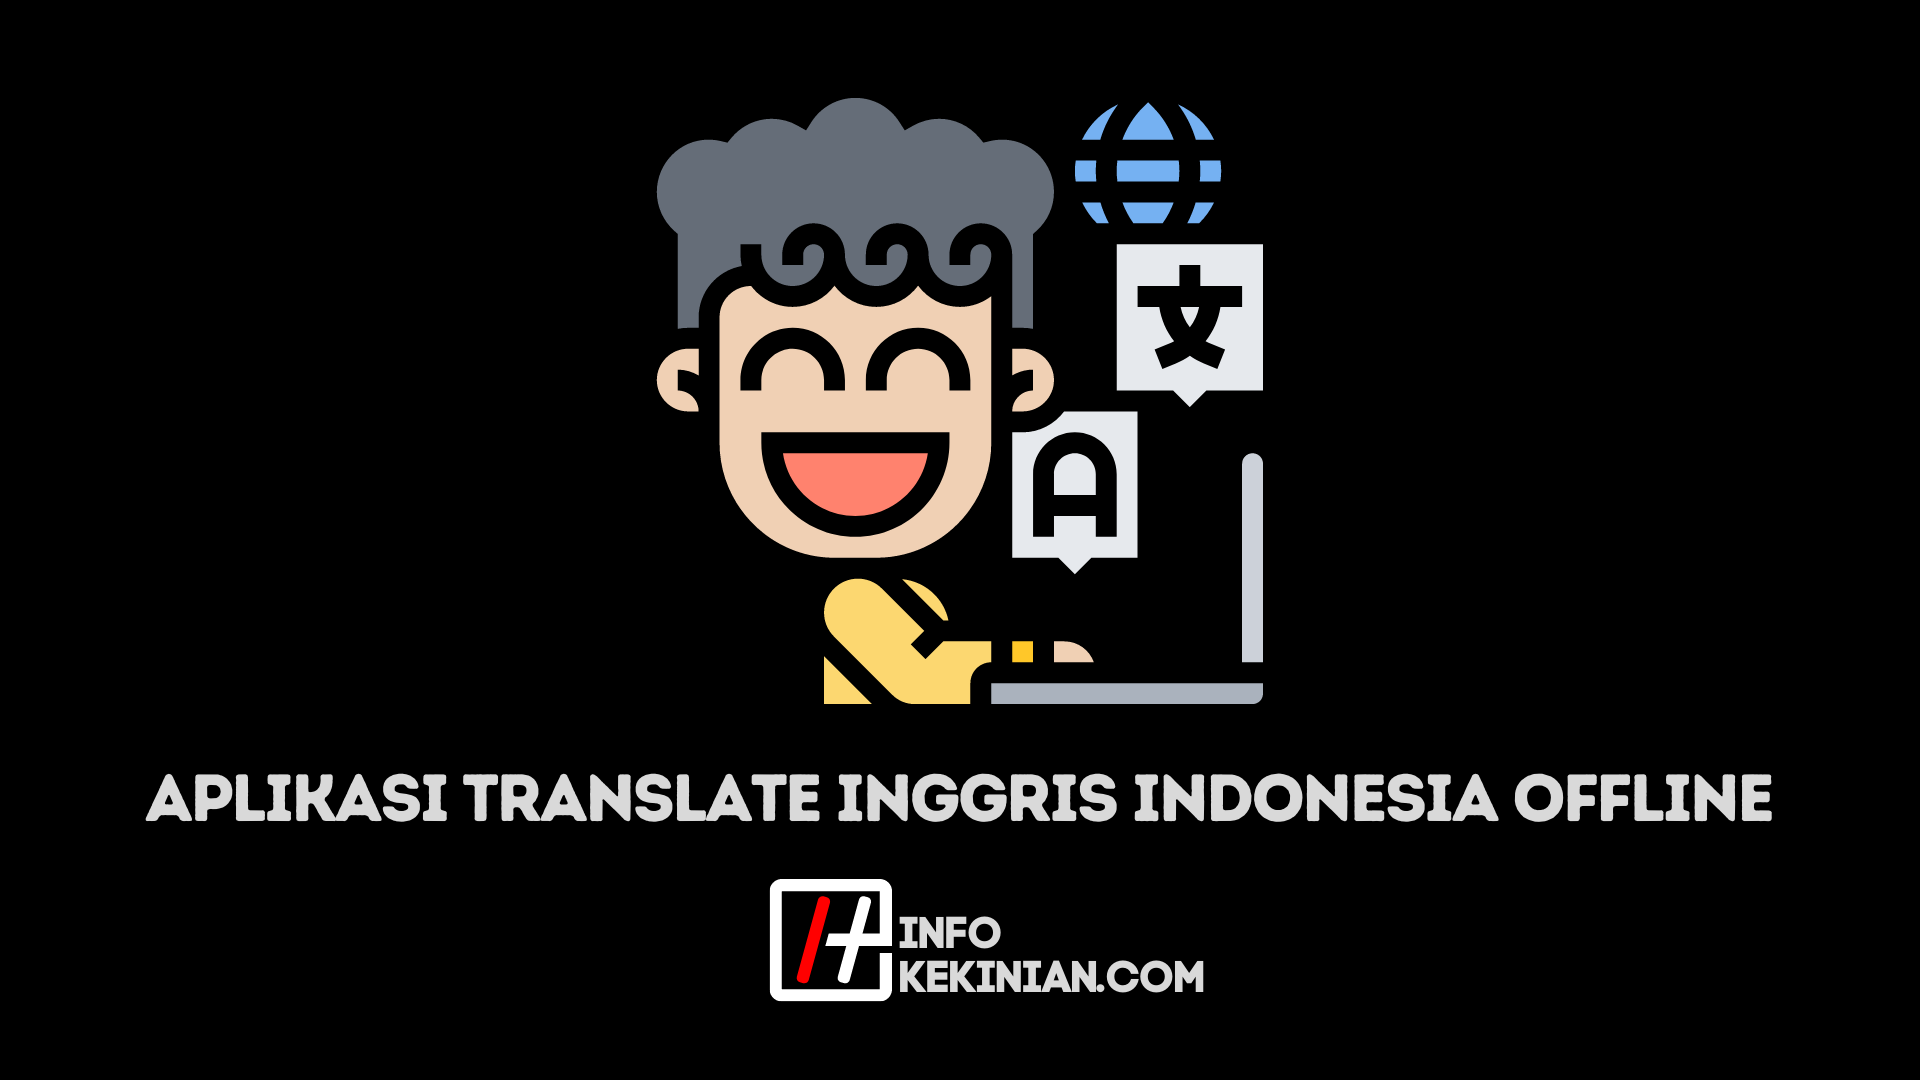 Aplikasi translate inggris indonesia